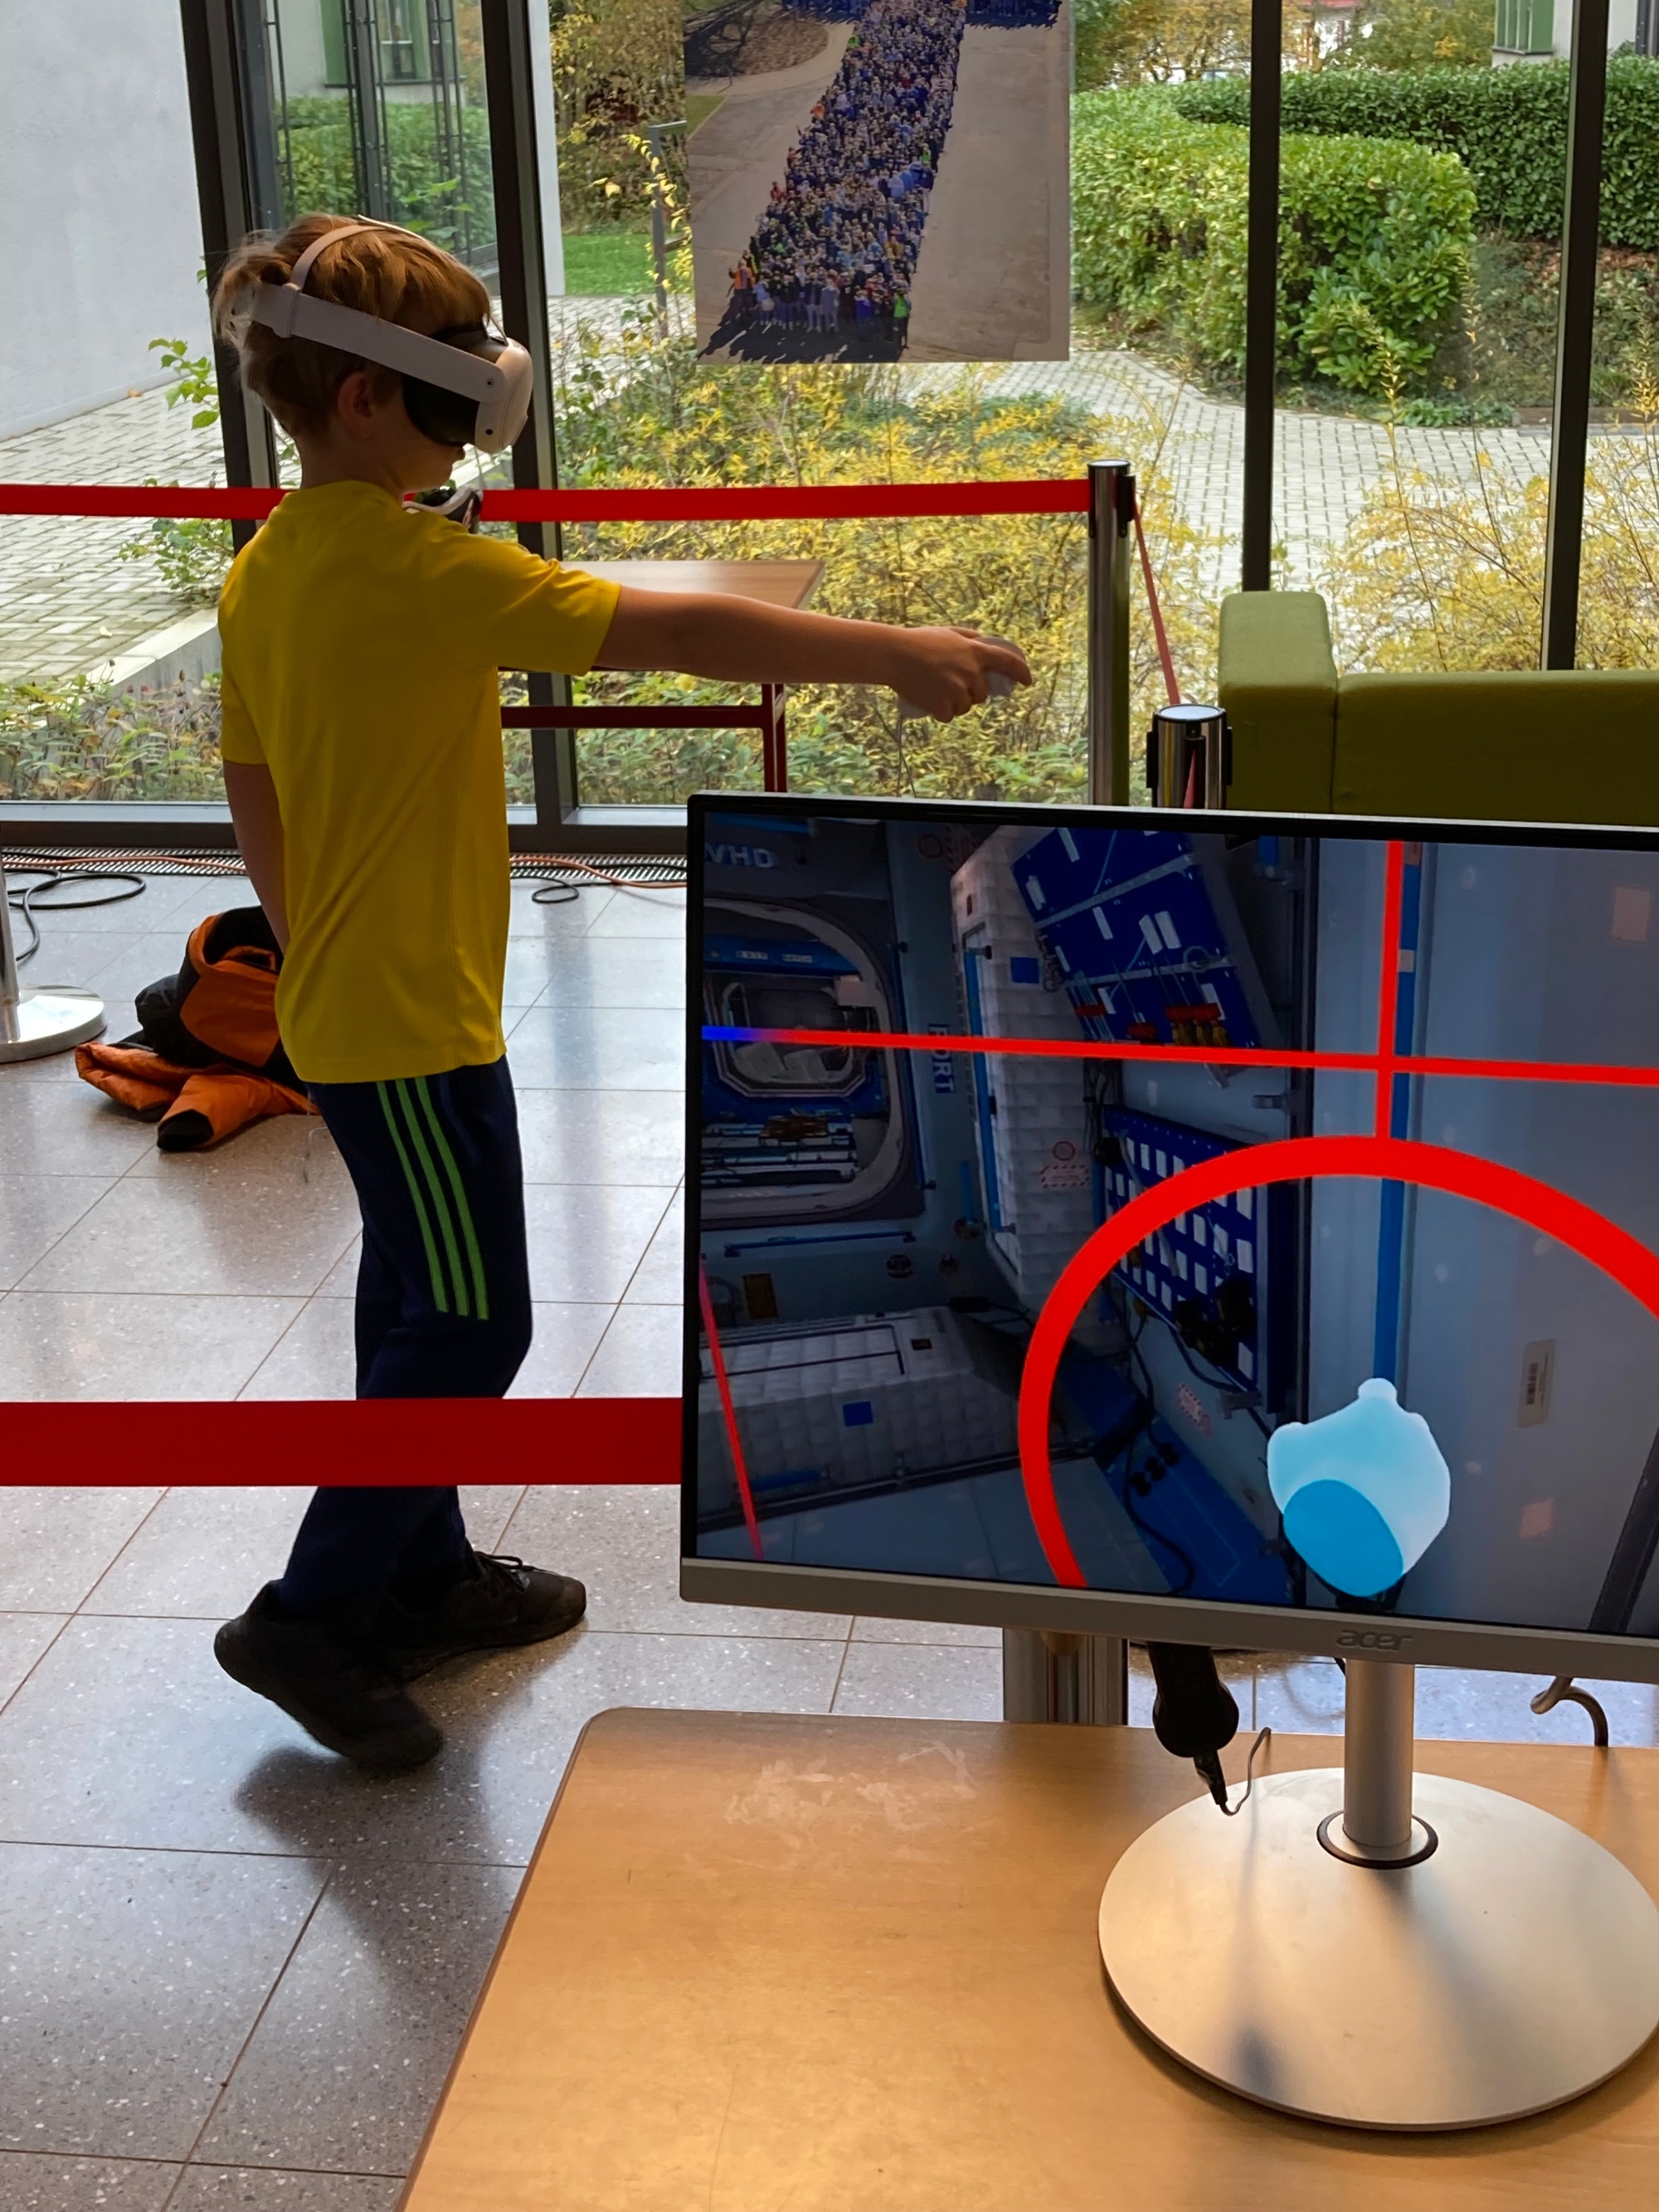 Schüler spielt ein PC-Spiel mit einer VR-Brille.